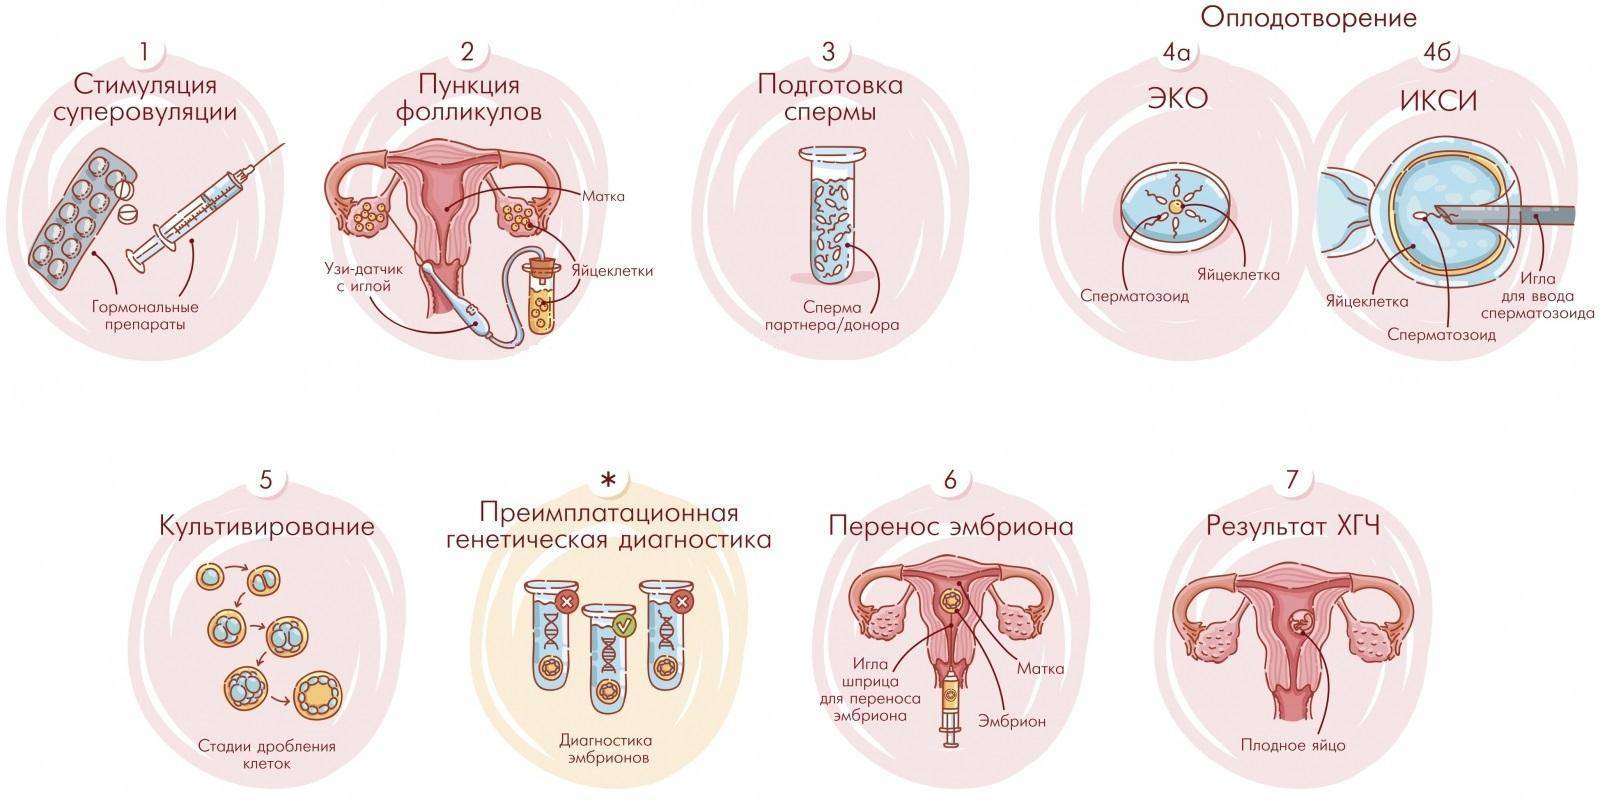 Лапароскопия перед эко: зачем проводят, через сколько времени после процедуры можно беременеть?